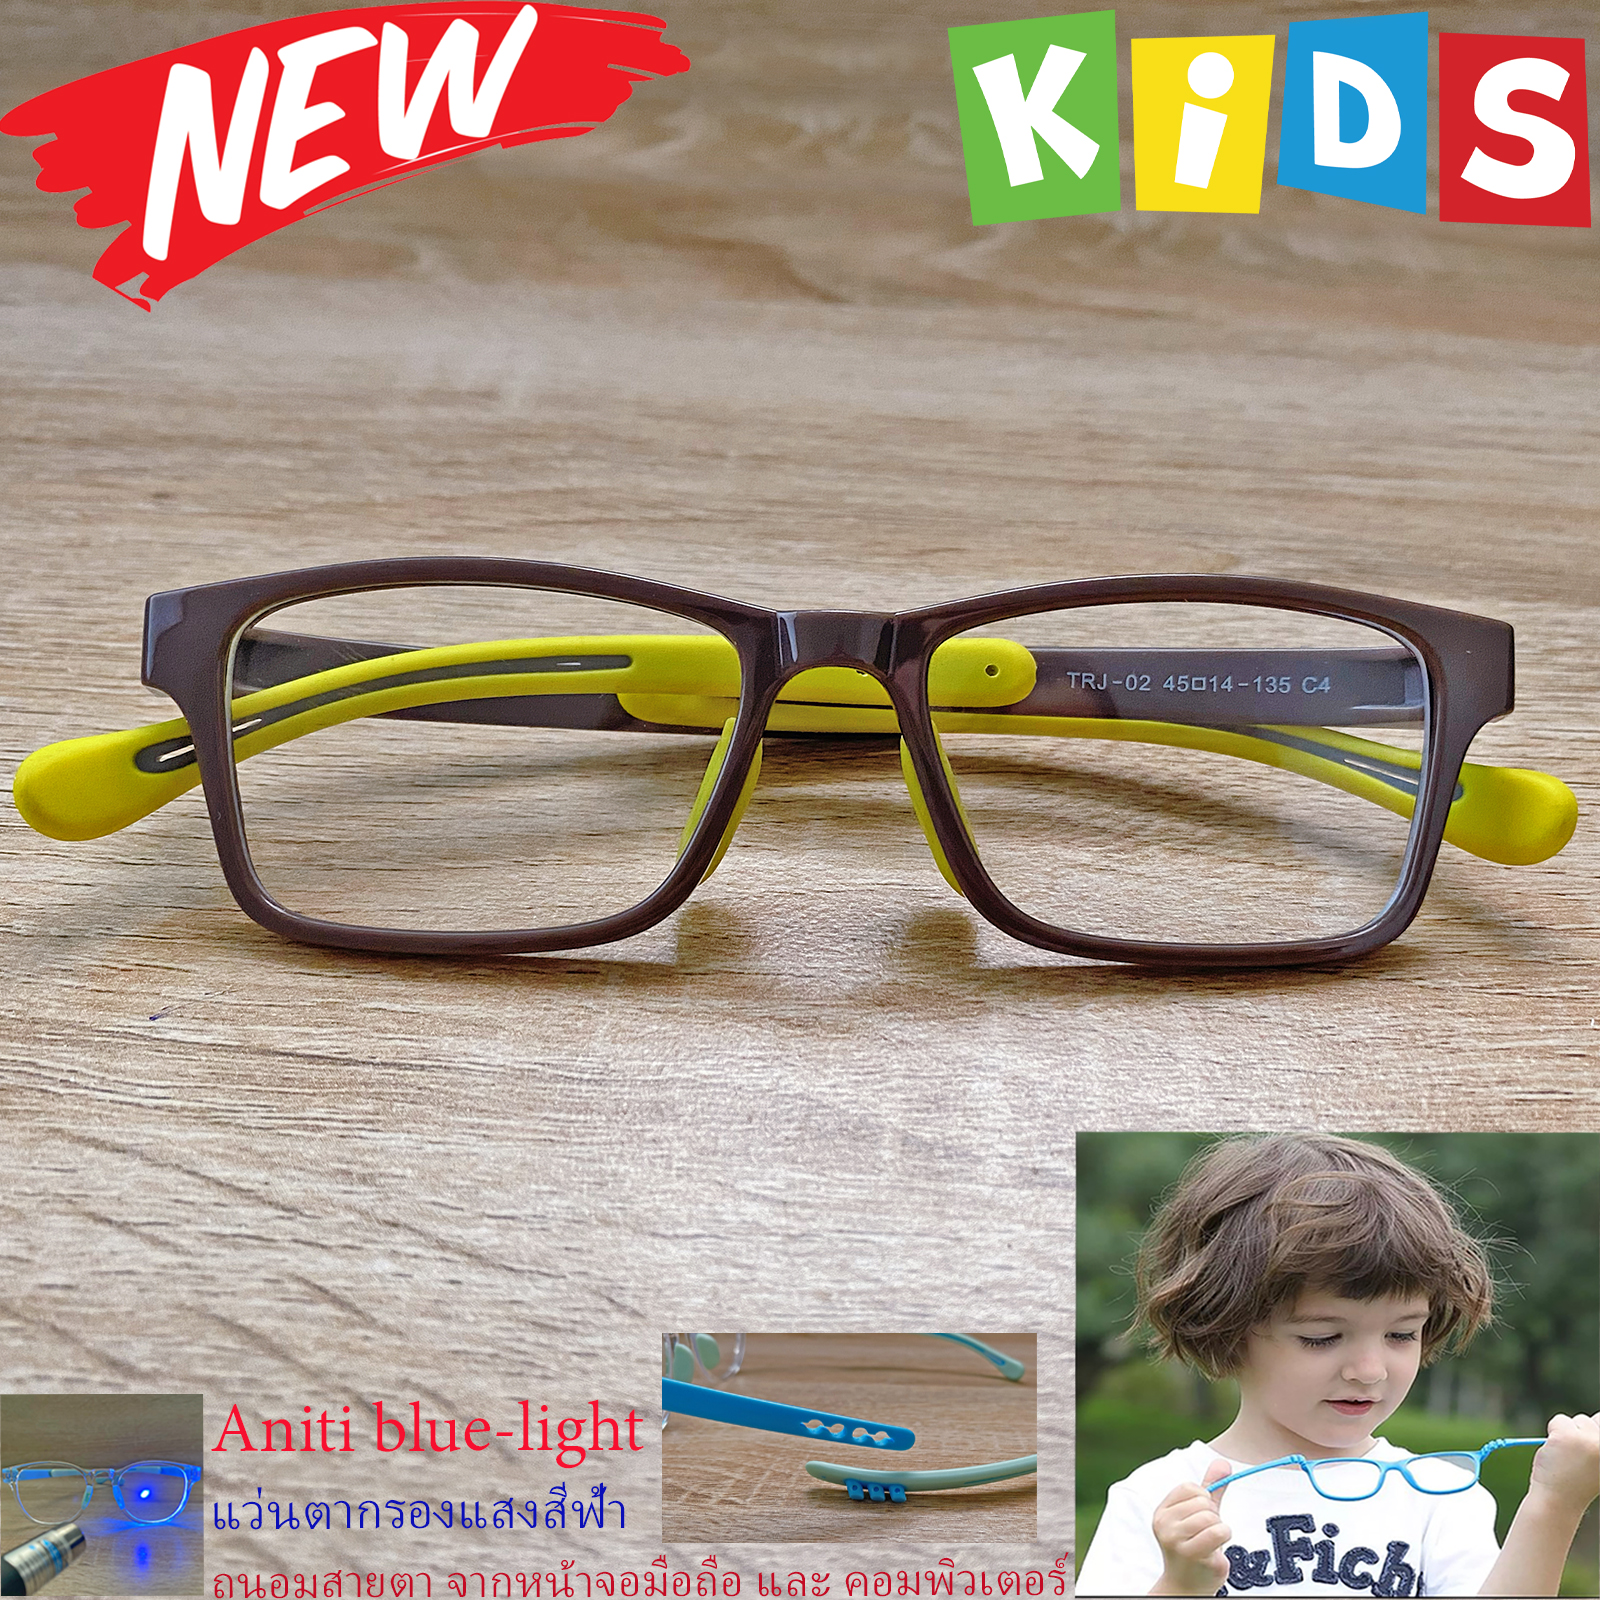 แว่นตาเด็ก กรองแสงสีฟ้า blue block แว่นเด็ก บลูบล็อค รุ่น 02 สีน้ำตาล ขาข้อต่อยืดหยุ่น ขาปรับระดับได้ วัสดุTR90 เหมาะสำหรับเลนส์สายตา